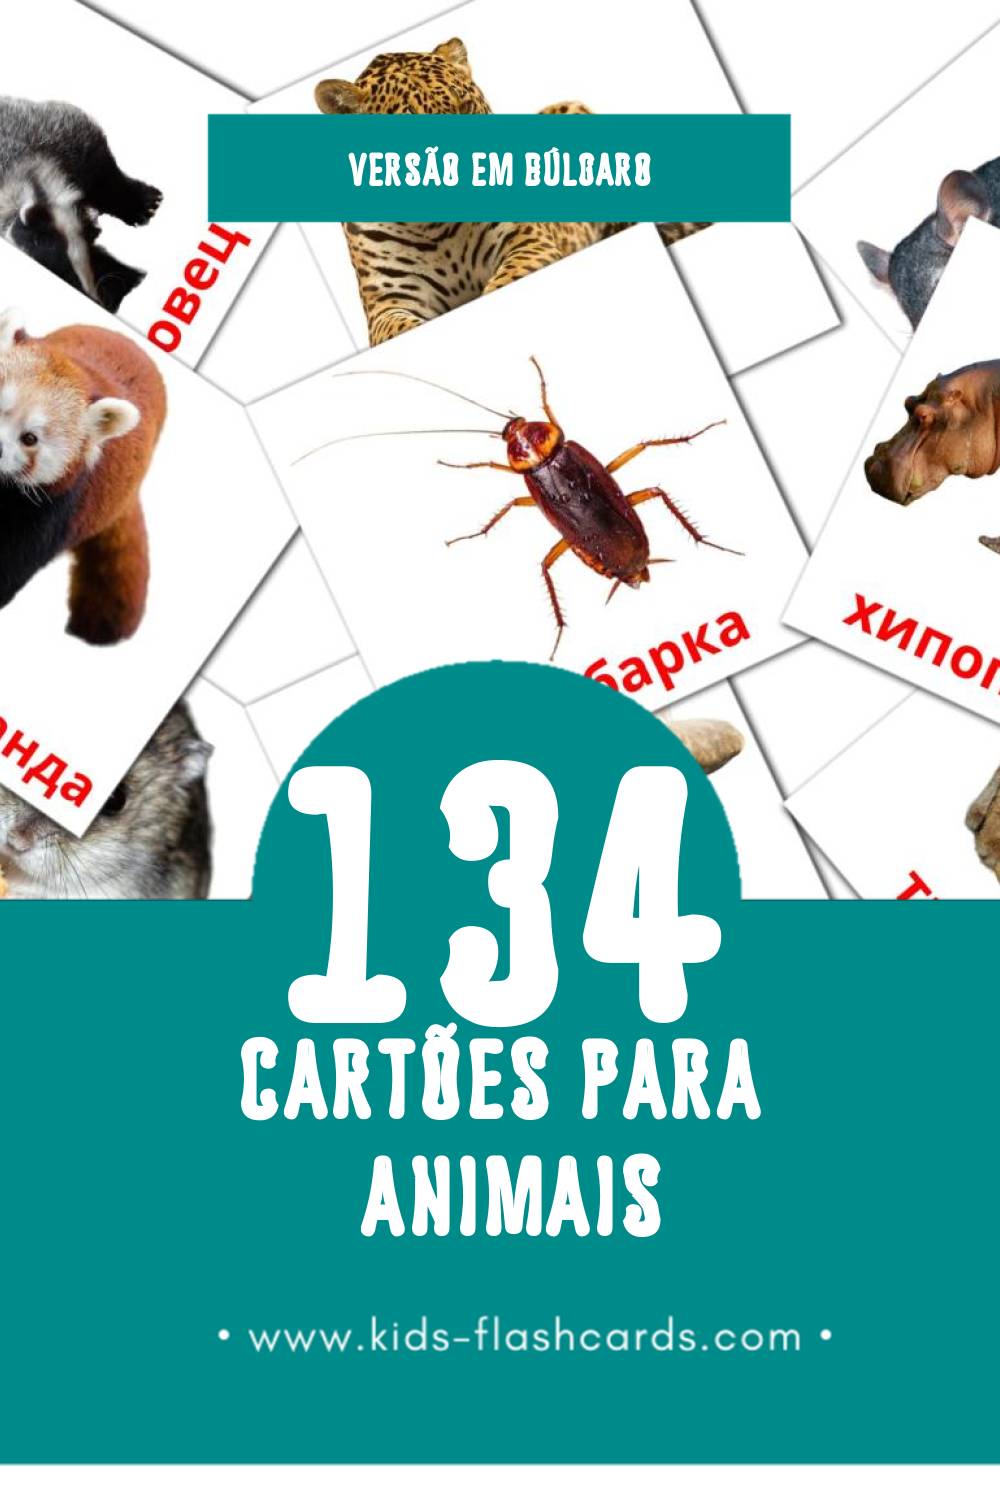 Flashcards de Животни Visuais para Toddlers (134 cartões em Búlgaro)